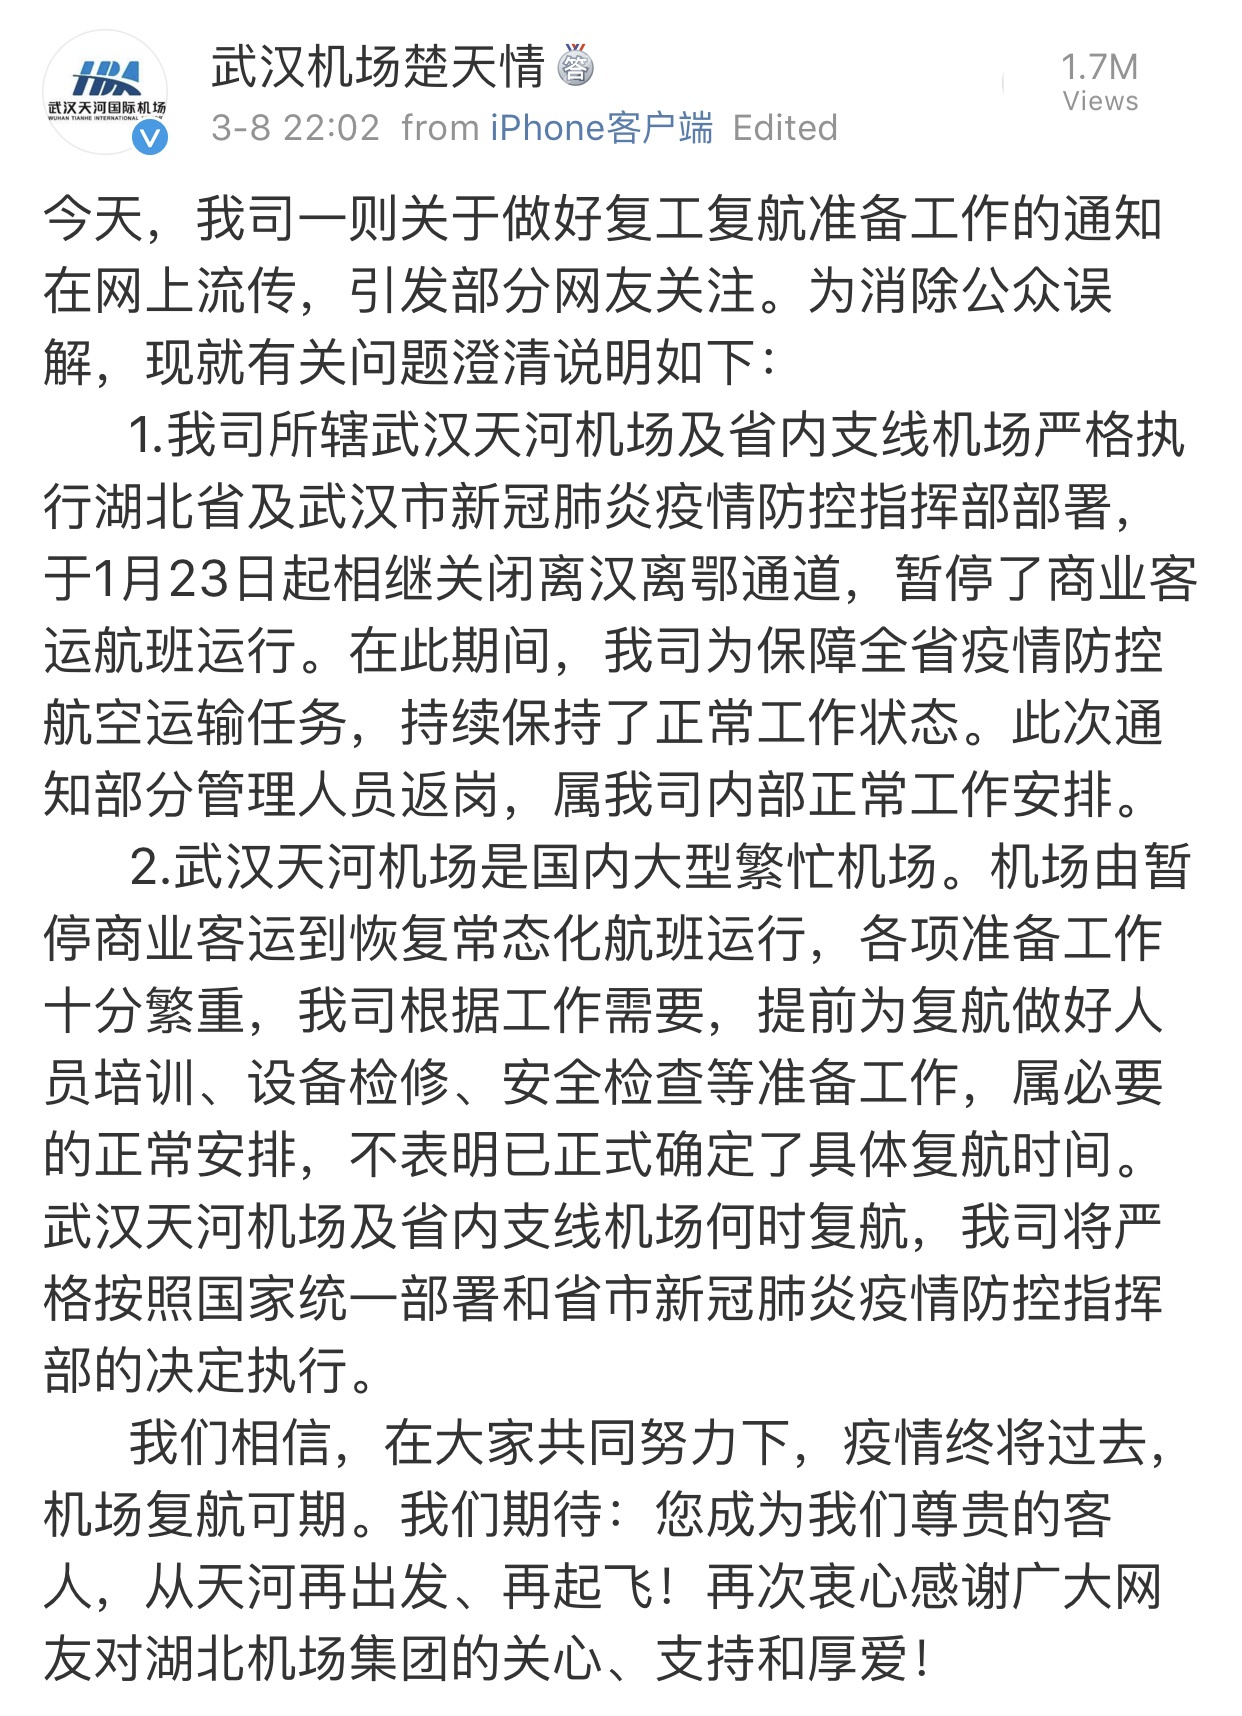 武汉天河国际机场于3月8日晚间在微博上发布的通告。 截图